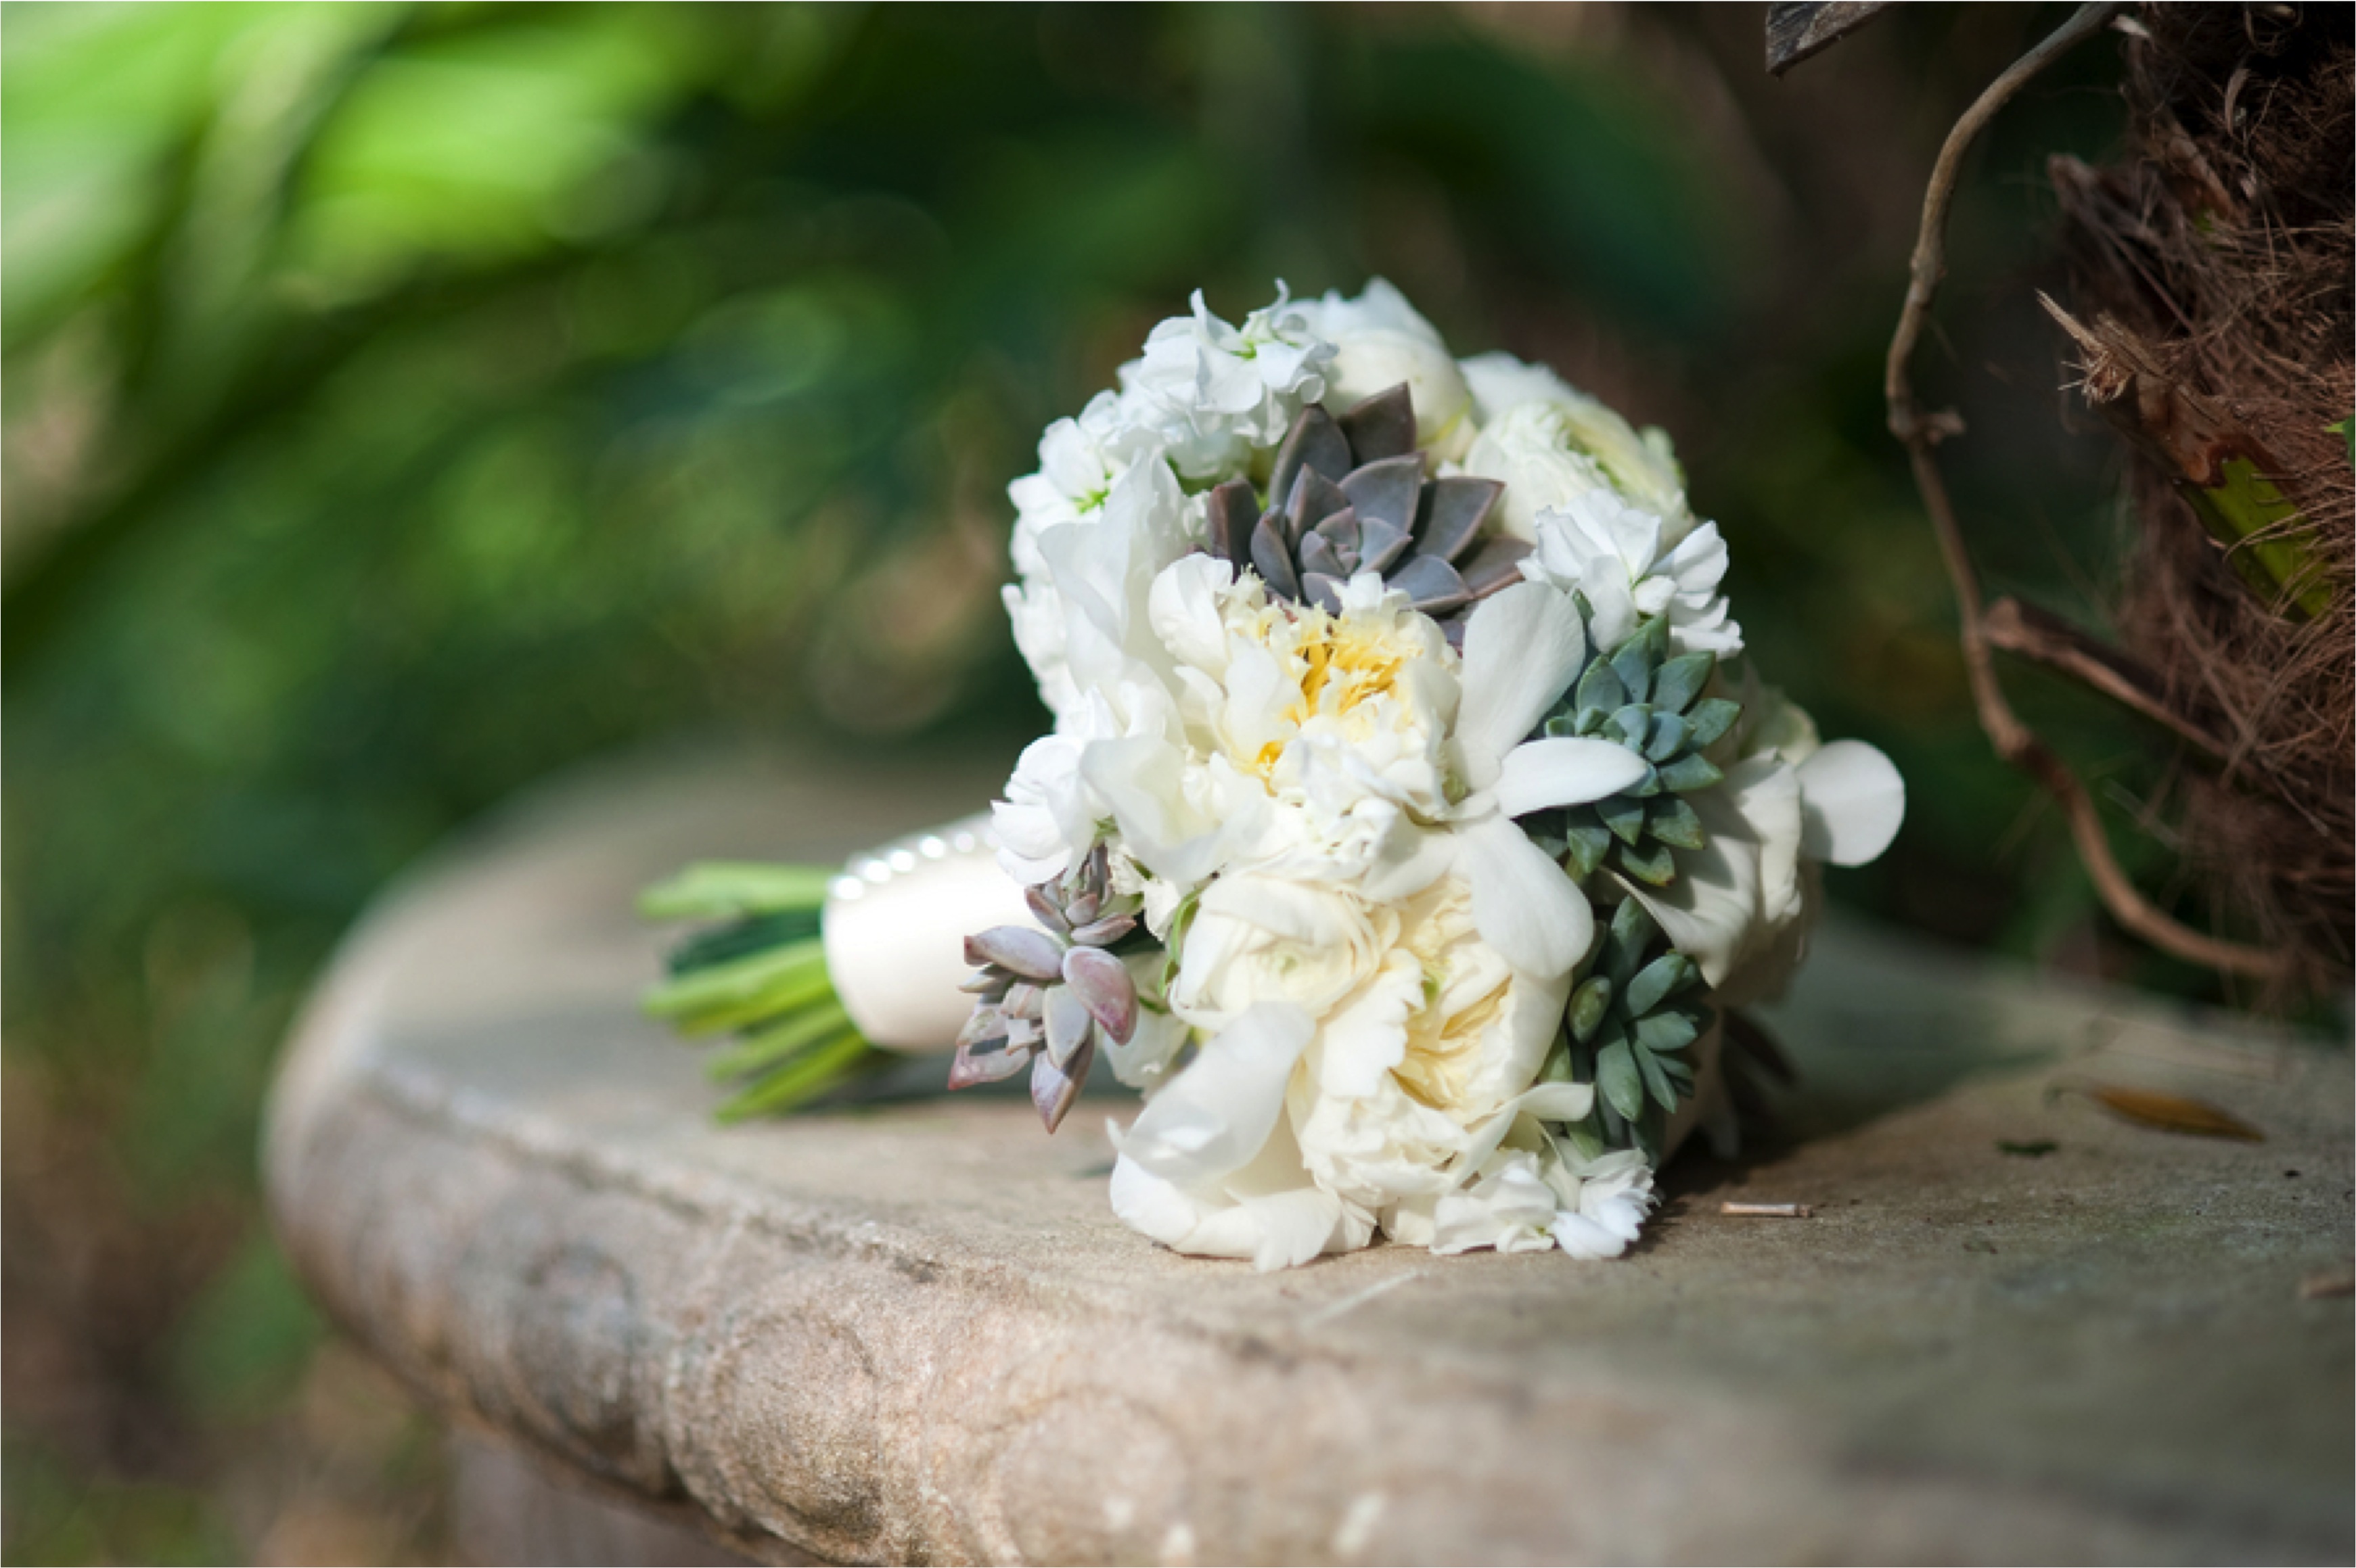 Green & White Nature Inspired Wedding via TheELD.com